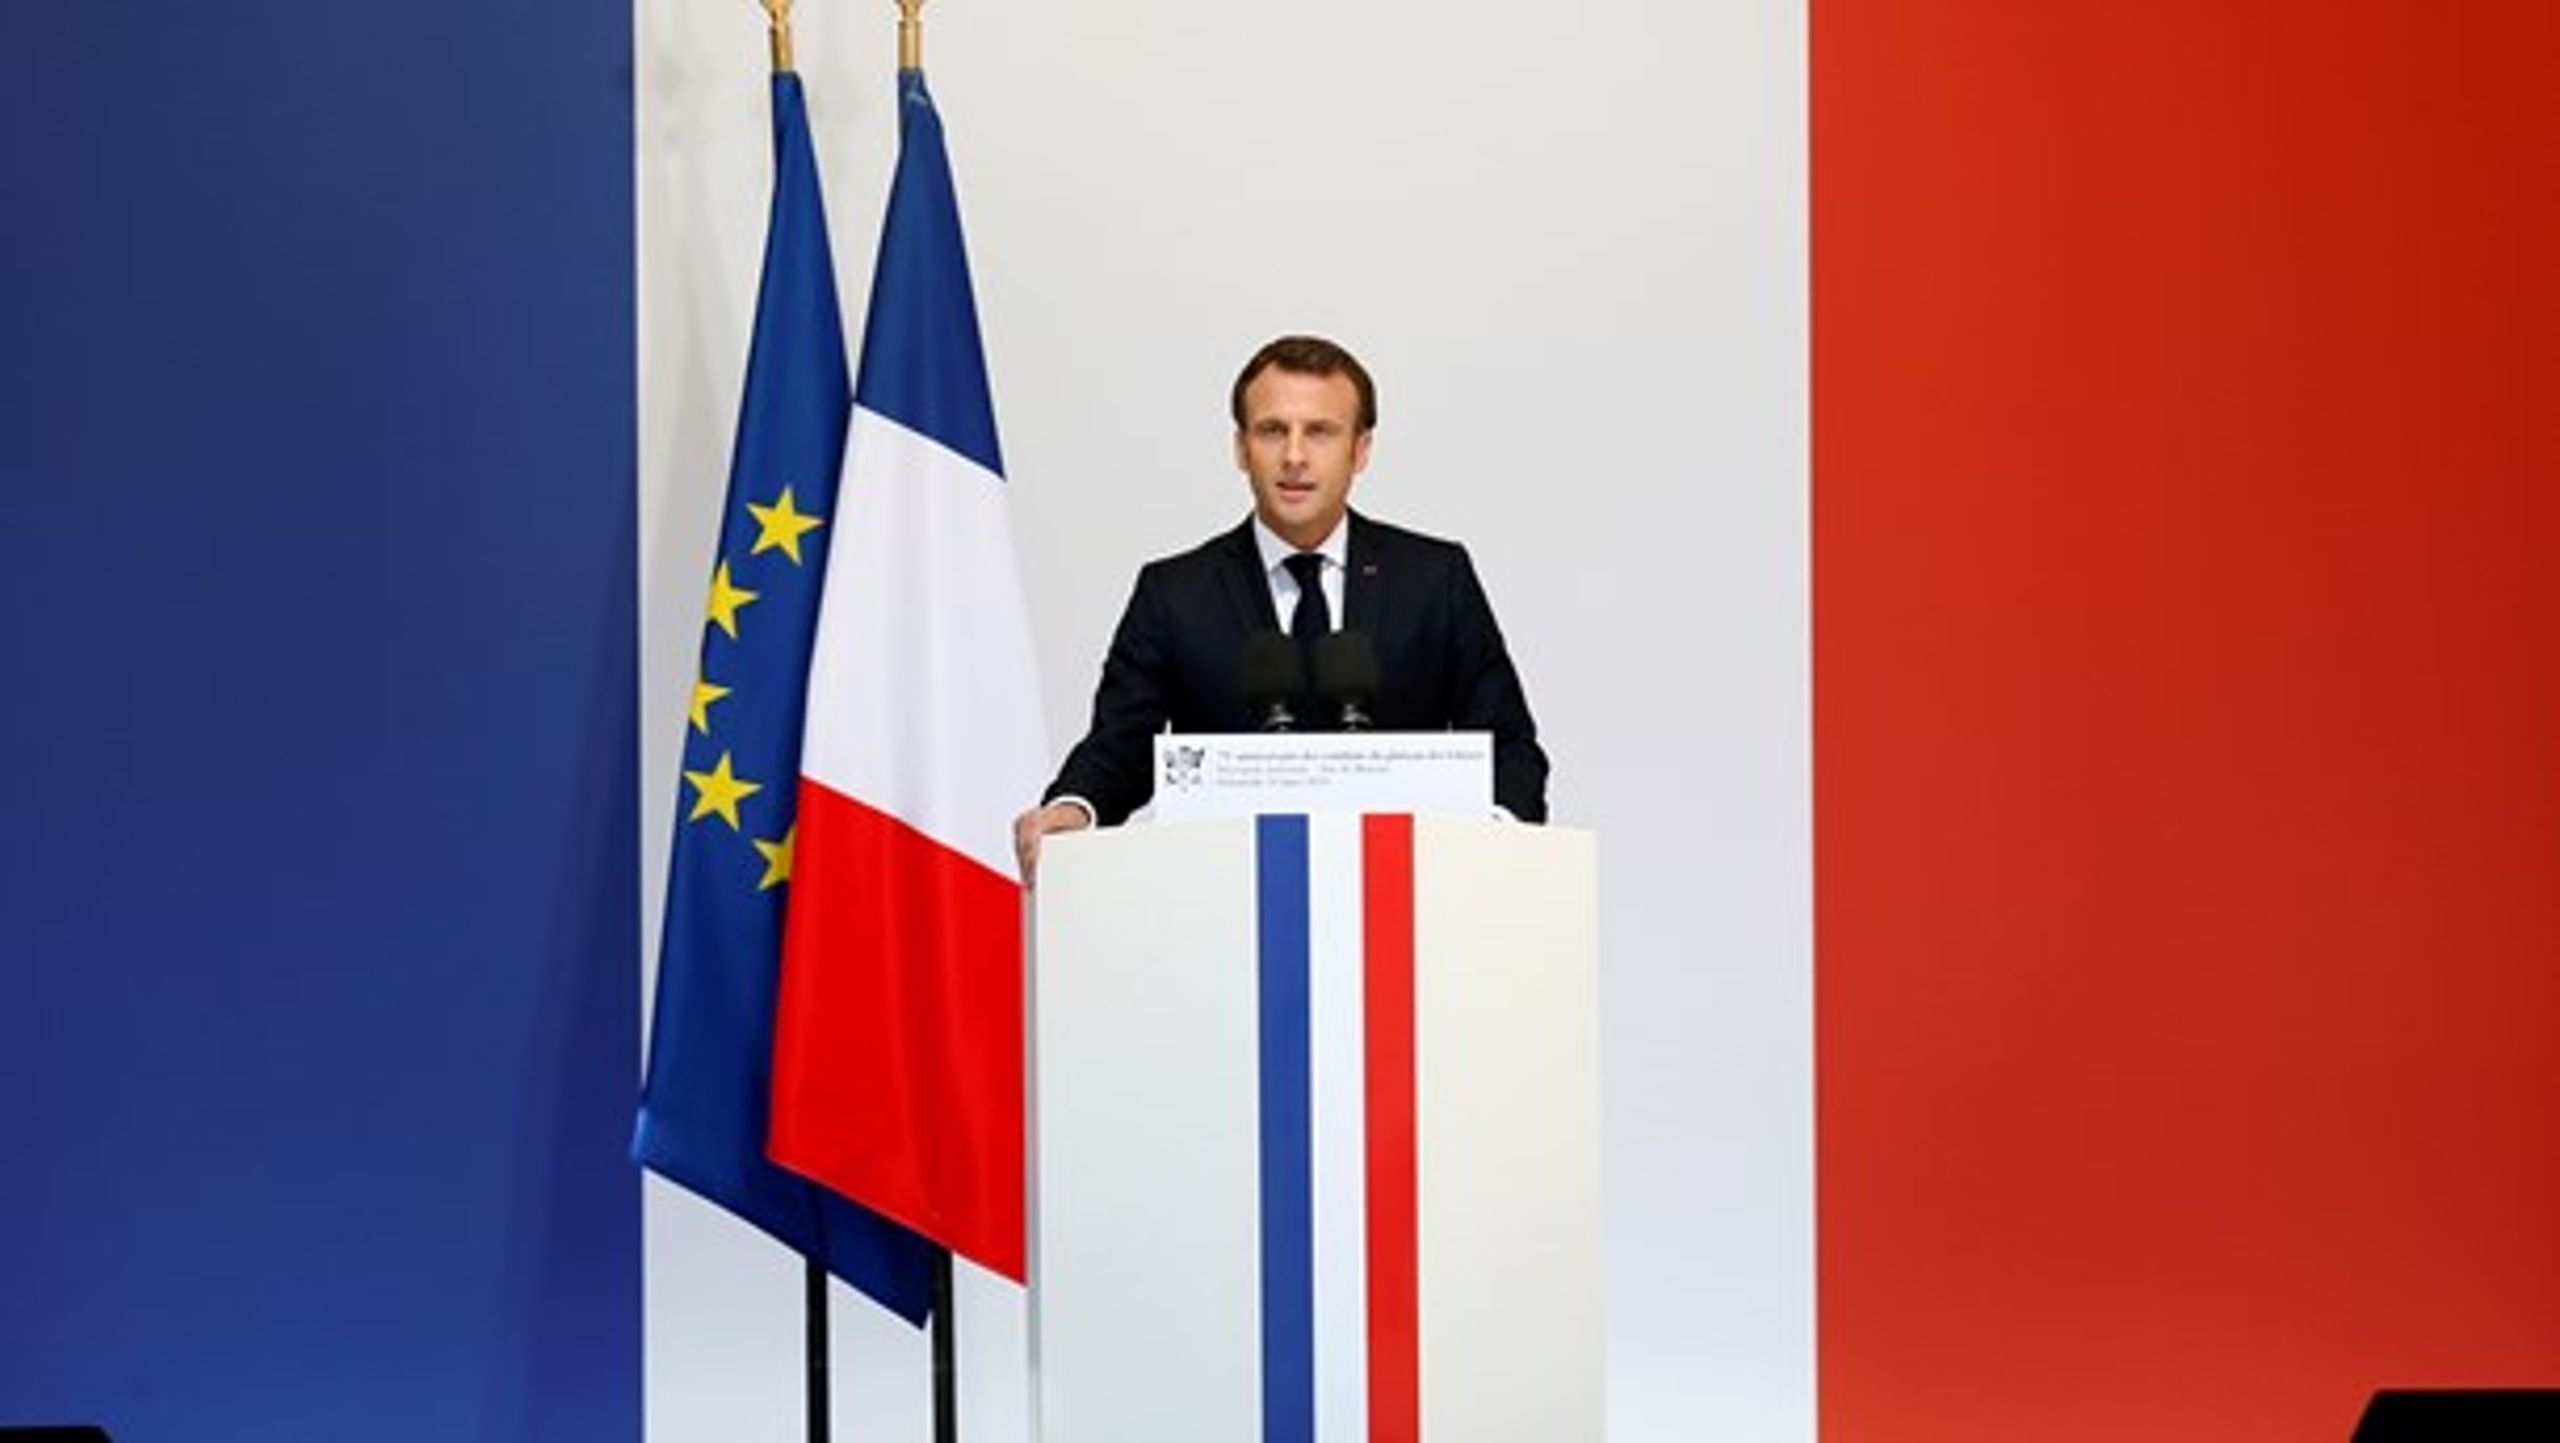 Den franske præsident&nbsp;Emmanuel&nbsp;Macron har siden præsidentvalget i 2017&nbsp;gjort kampen mod desinformation og indflydelsesoperationer til en væsentlig politisk prioritet.